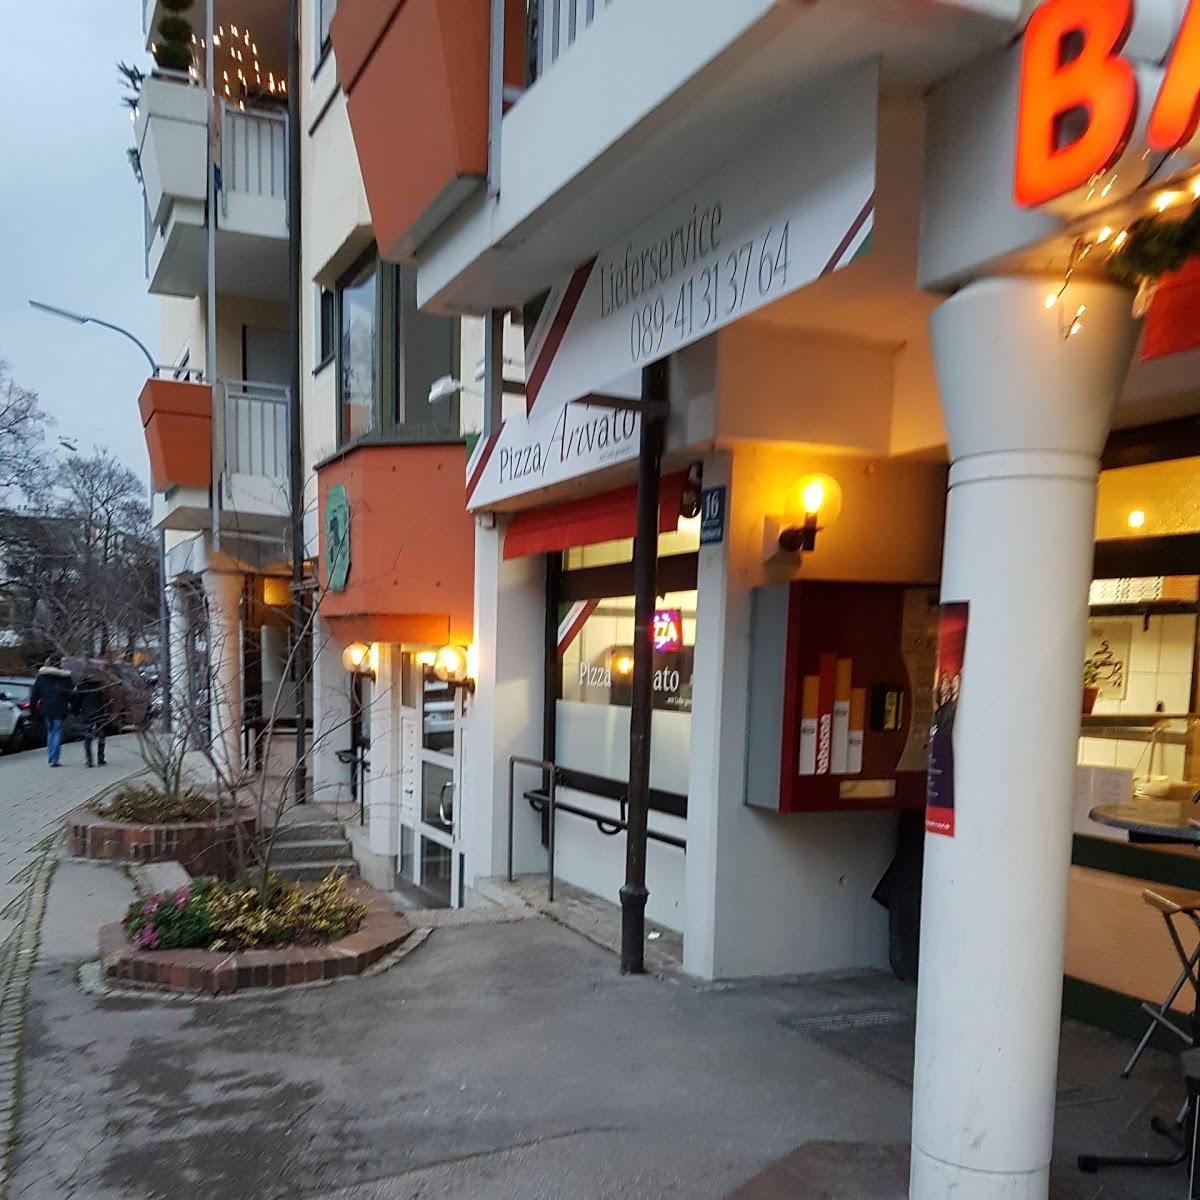 Restaurant "Pizza Arivato" in München